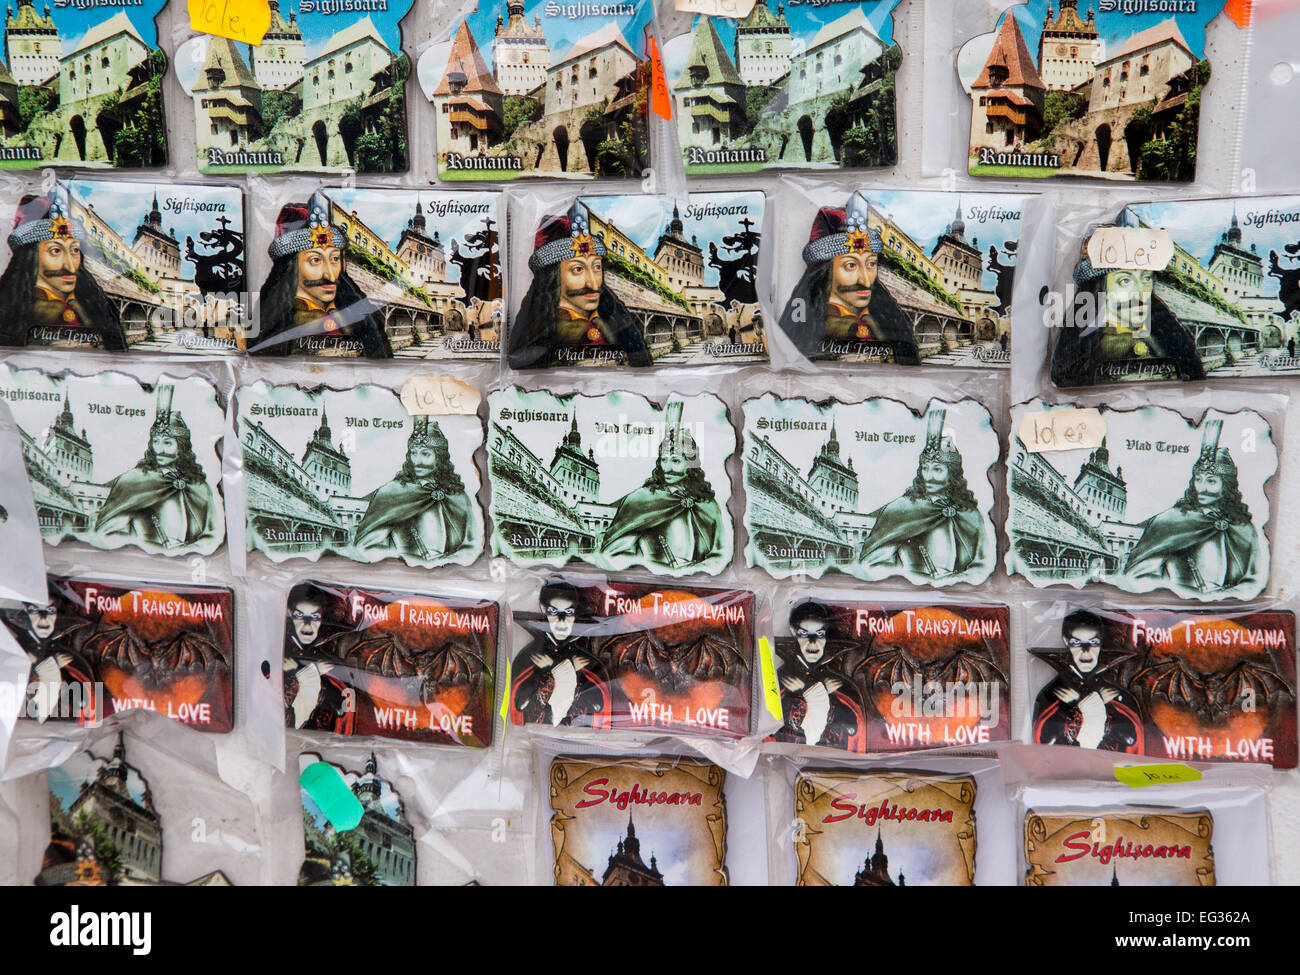 Il rumeno Negozio di souvenir che mostra Dracula-Vlad l'Impalatore e Sigishoara a 14 Secolo città medievale,l'bithplace di Vlad Tepes Foto Stock